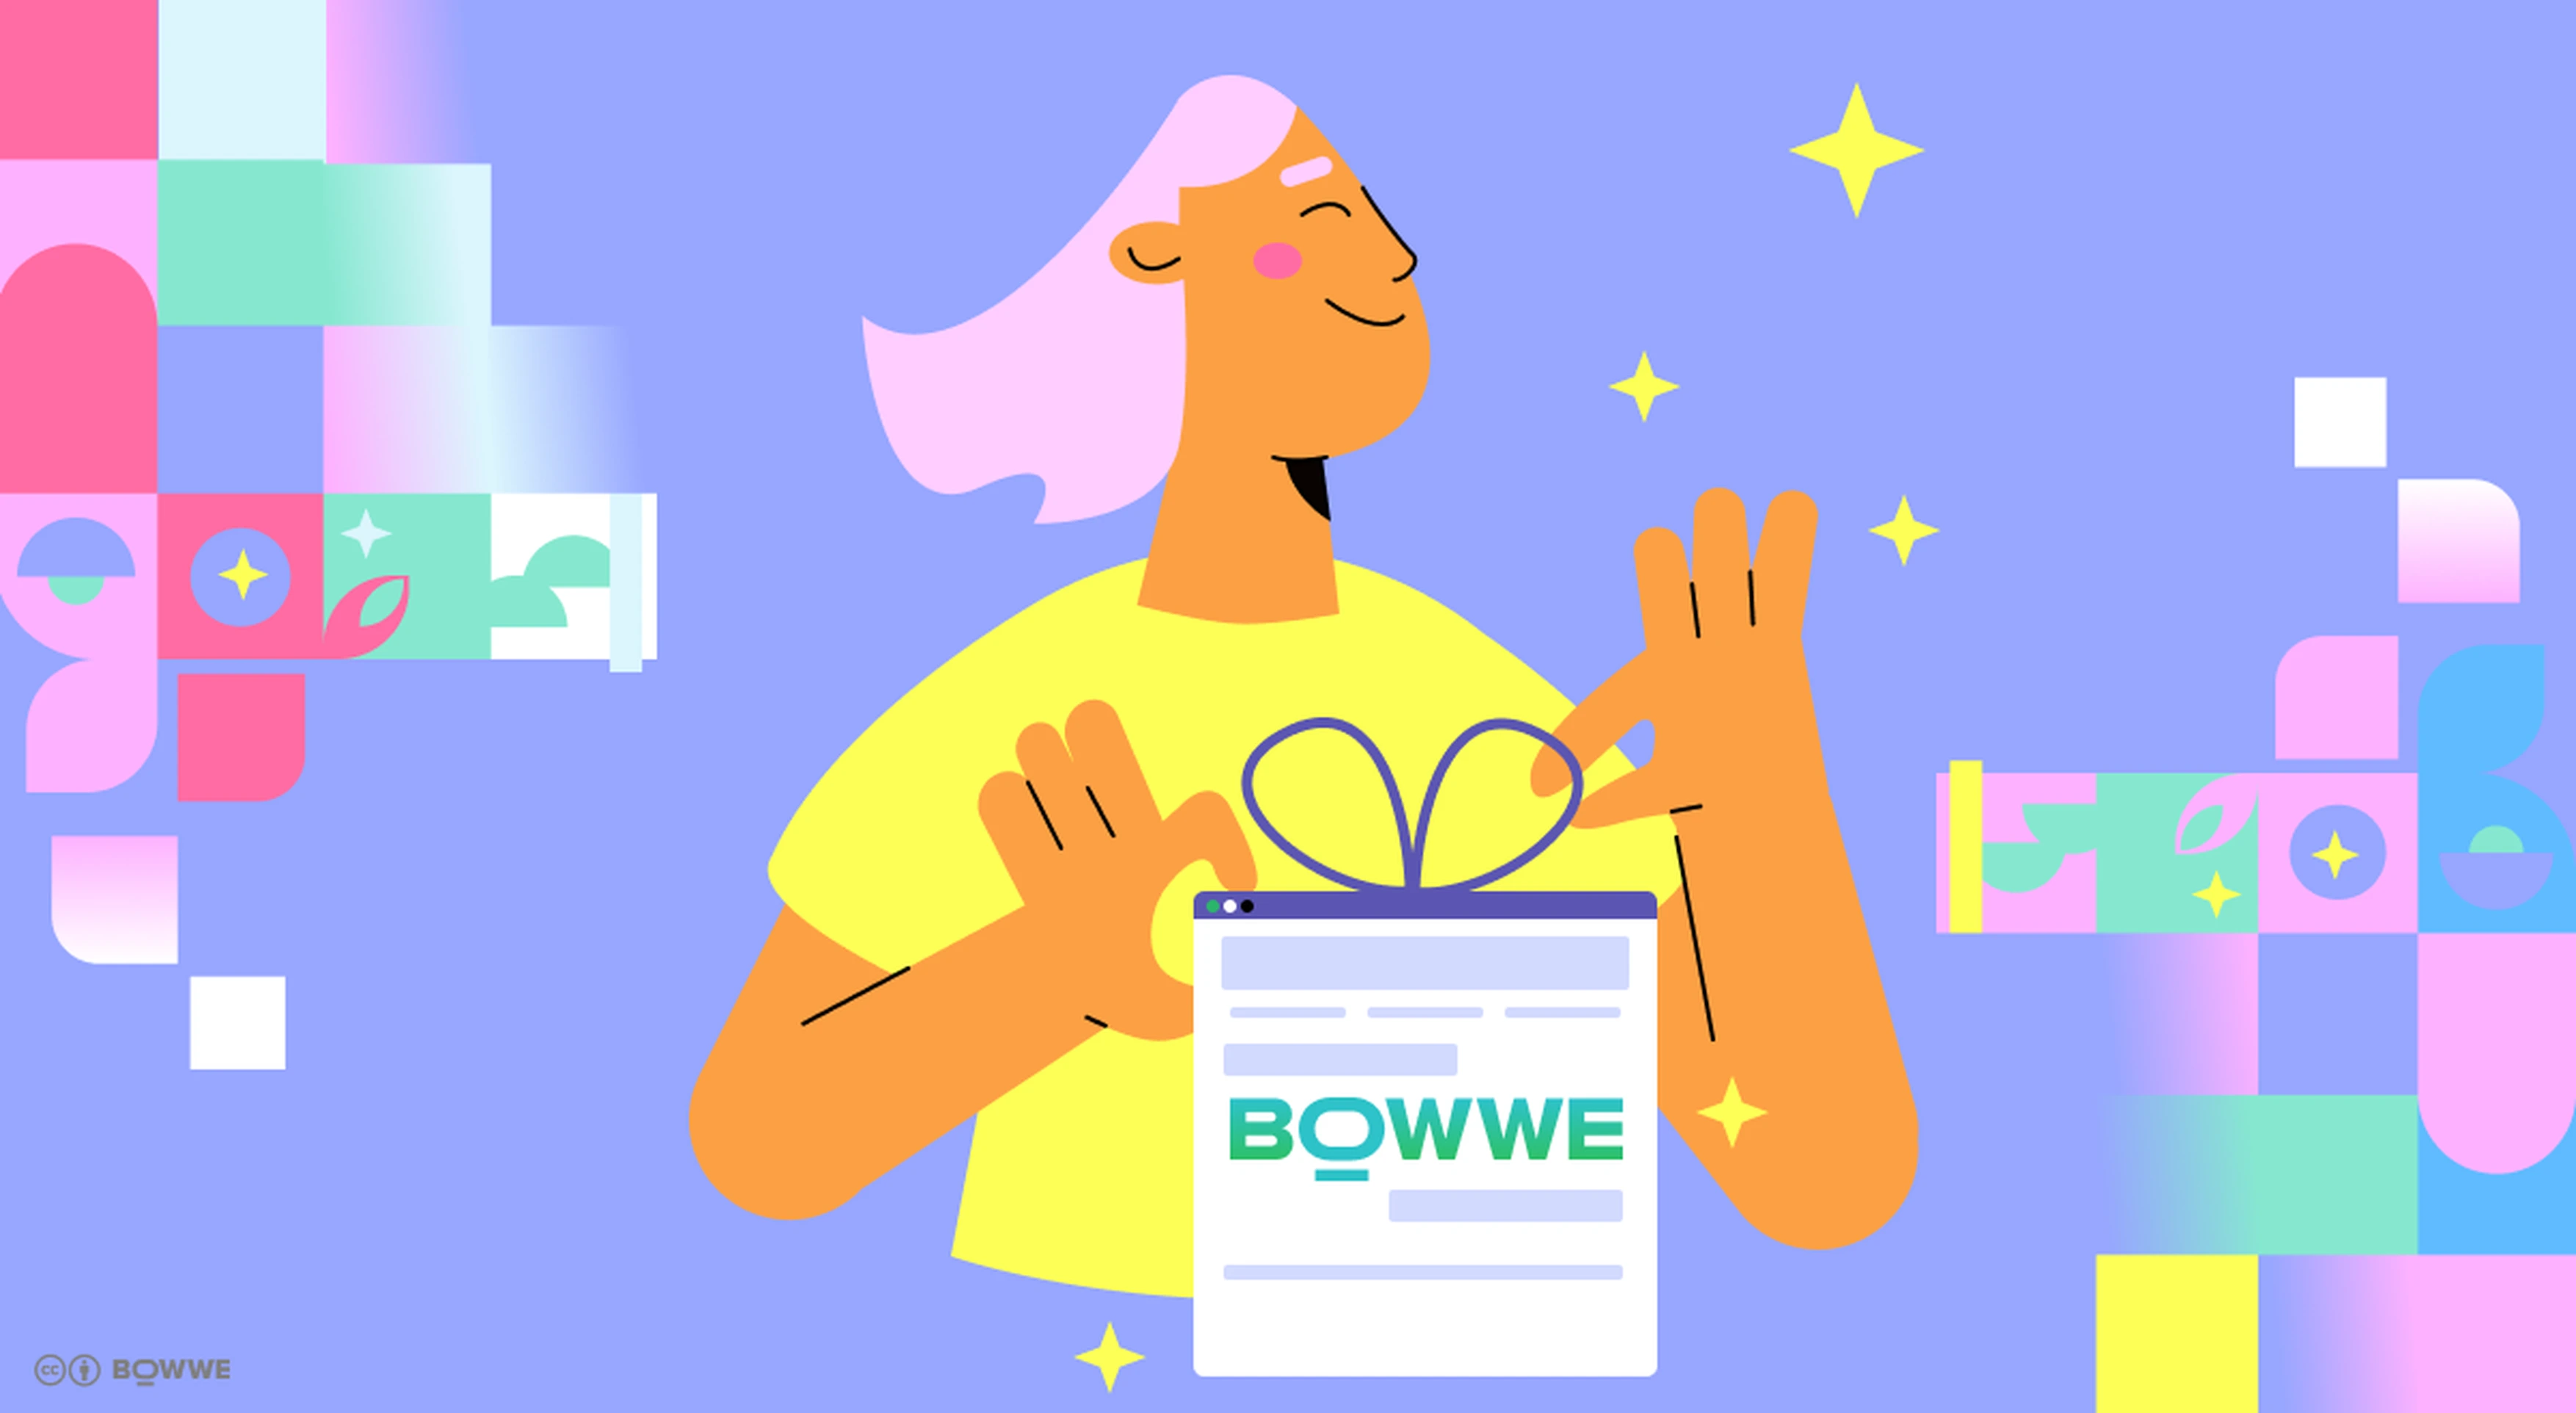 Una chica de pelo rosa con una camiseta amarilla que sostiene un regalo con el logo de BOWWE frente a ella.